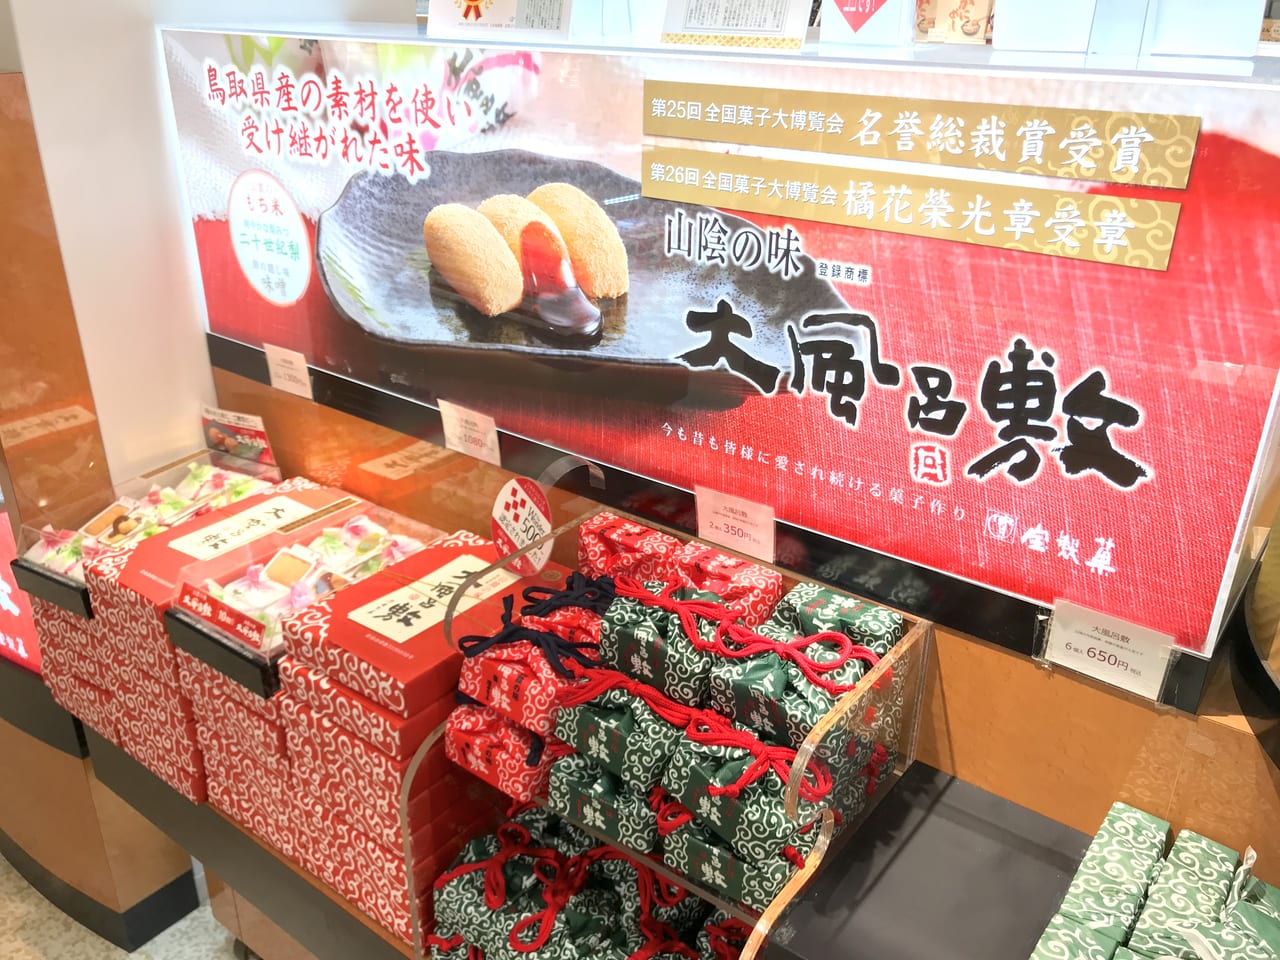 鳥取市 鳥取県産餅米と鳥取名産二十世紀梨使用 大風呂敷 は山陰の味 号外net 鳥取市 東部地域